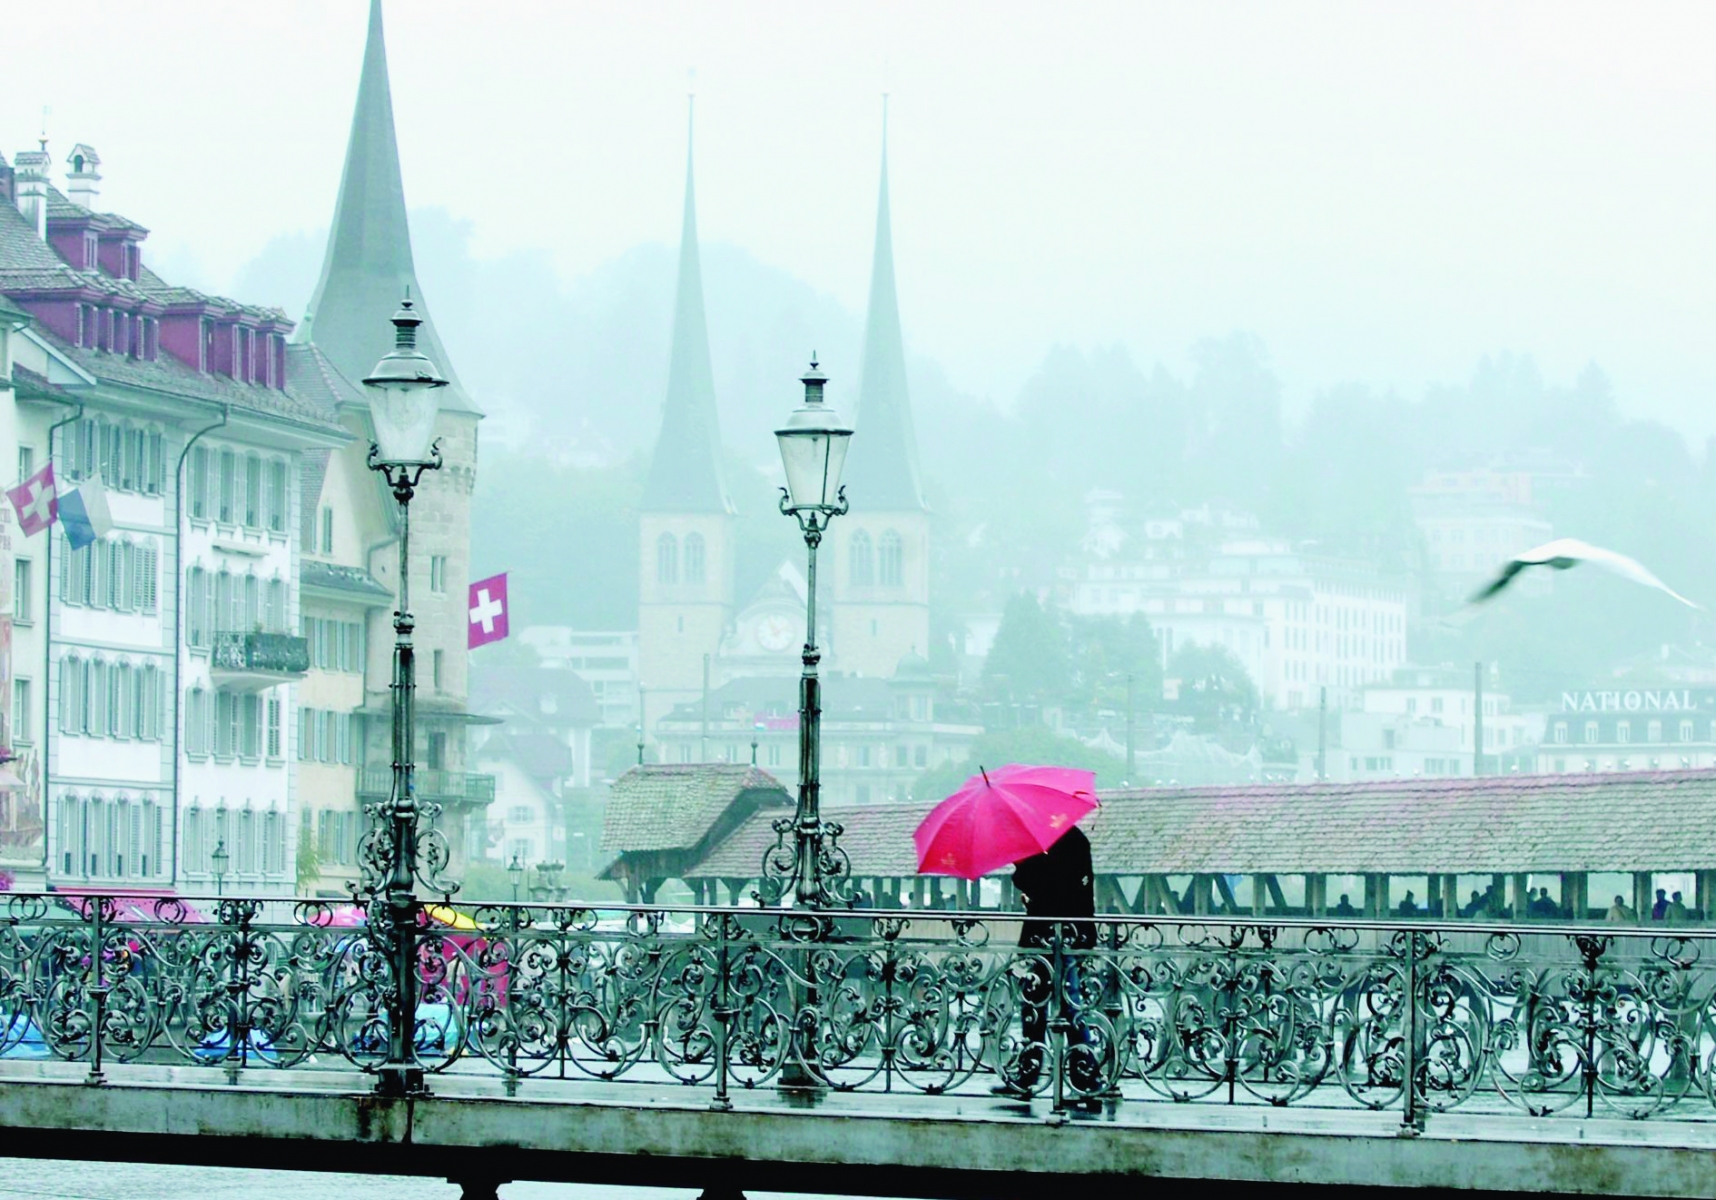 Bei regnerischem nebelverhangenem Wetter vermochten am Mittwoch, 3. August 2005 in Luzern nur Schirme und Fahnen etwas Farbe auf dem Rathaussteg bringen. (KEYSTONE/Sigi Tischler) SCHWEIZ WETTER LUZERN